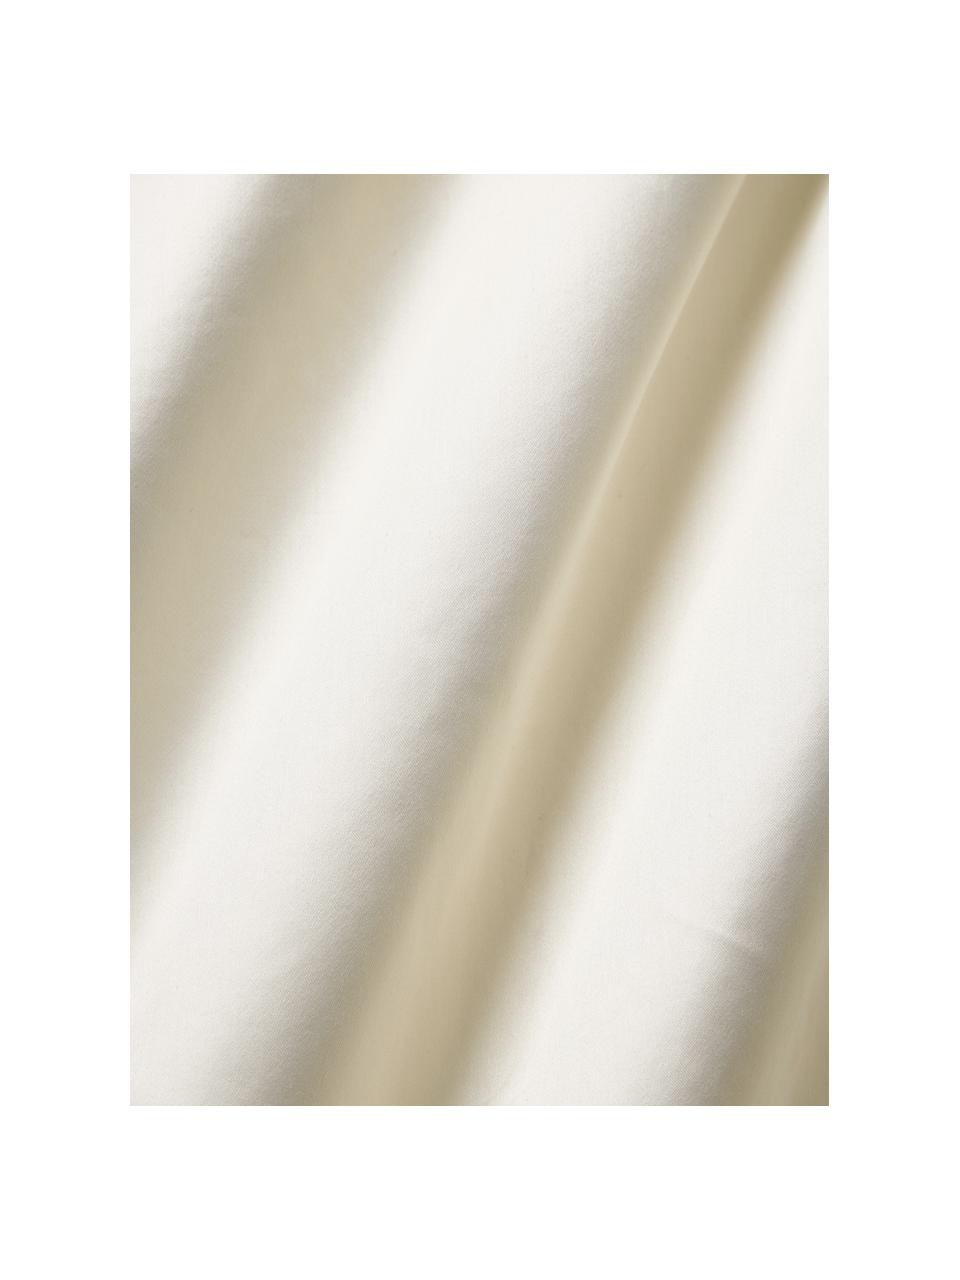 Sábana bajera de satén con somier Premium, Beige claro, Cama 90 cm (90 x 200 x 35 cm)